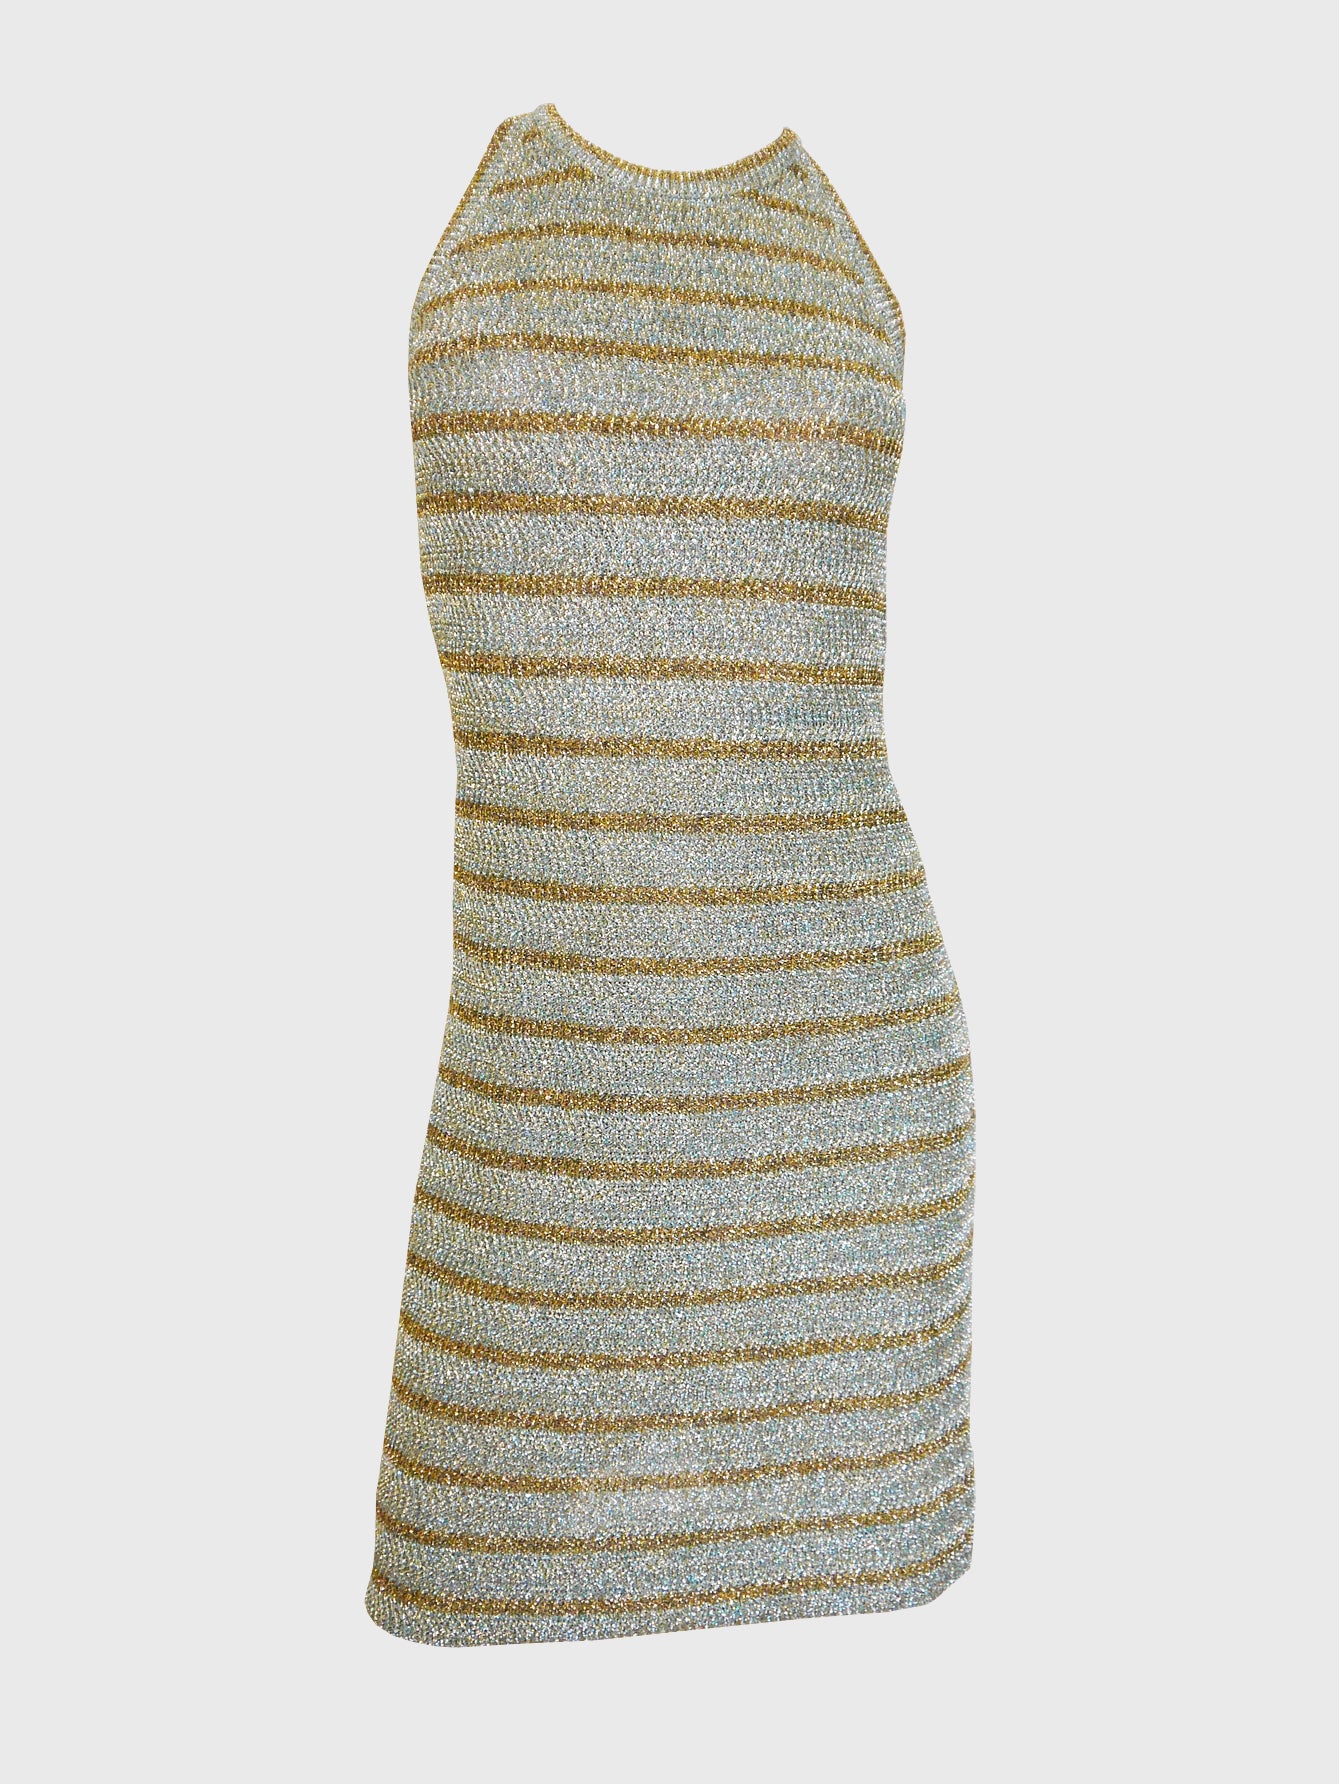 PIERRE BALMAIN 1960s Vintage Striped Metallic Lurex Knit Dress